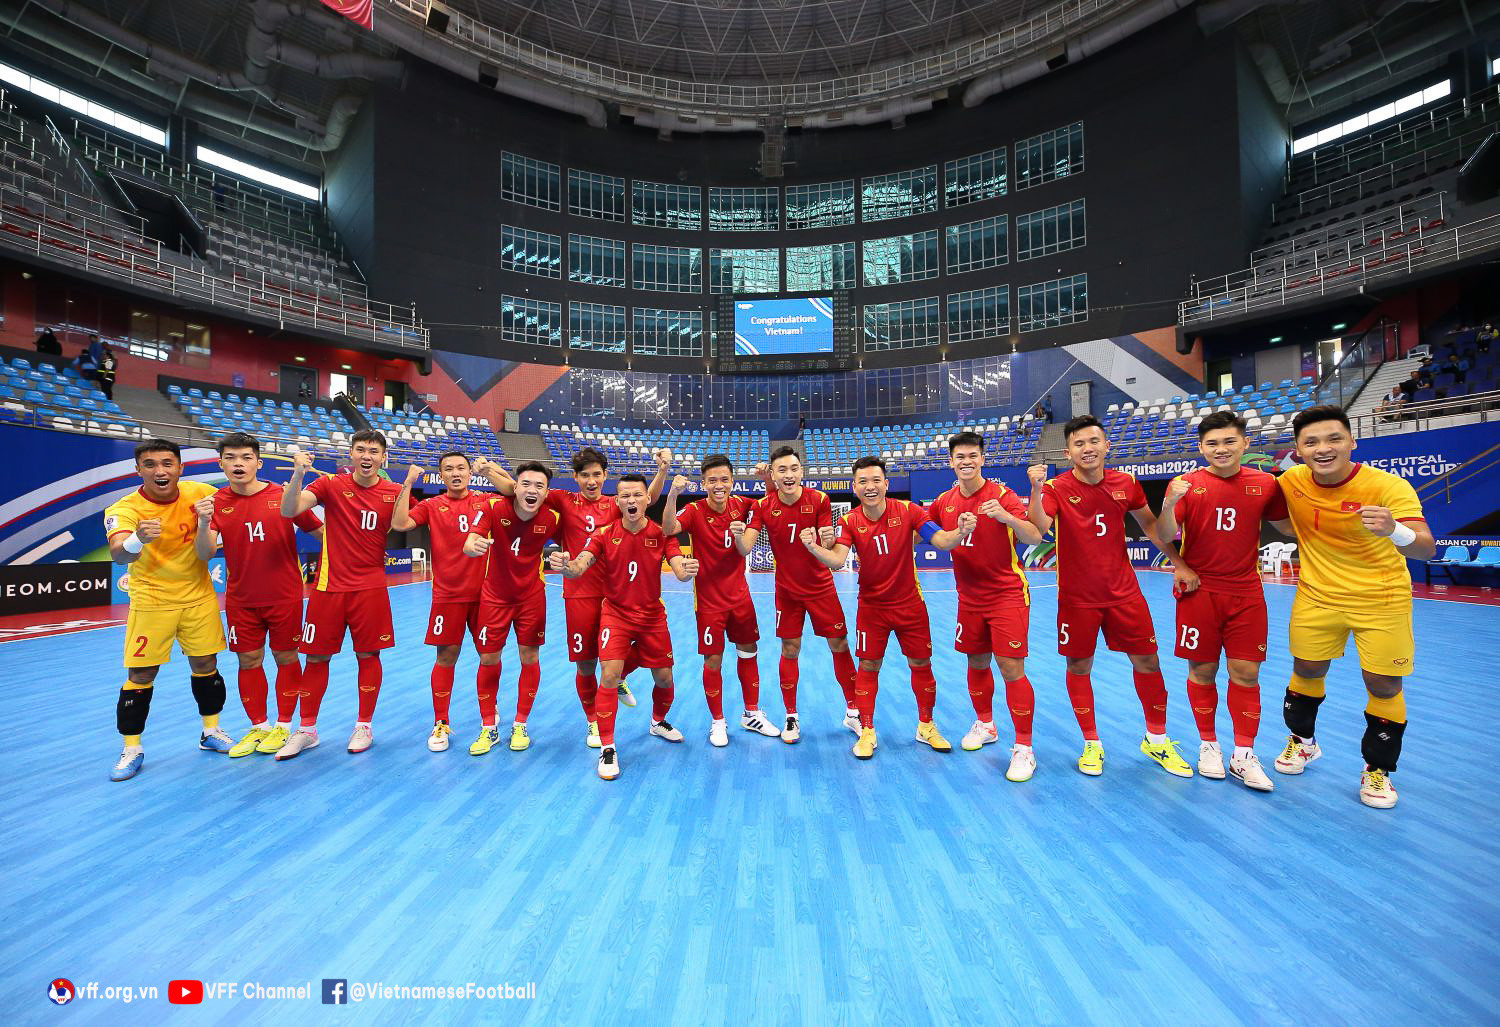 Tuyển futsal Việt Nam đấu Iran Chiến đấu hết mình